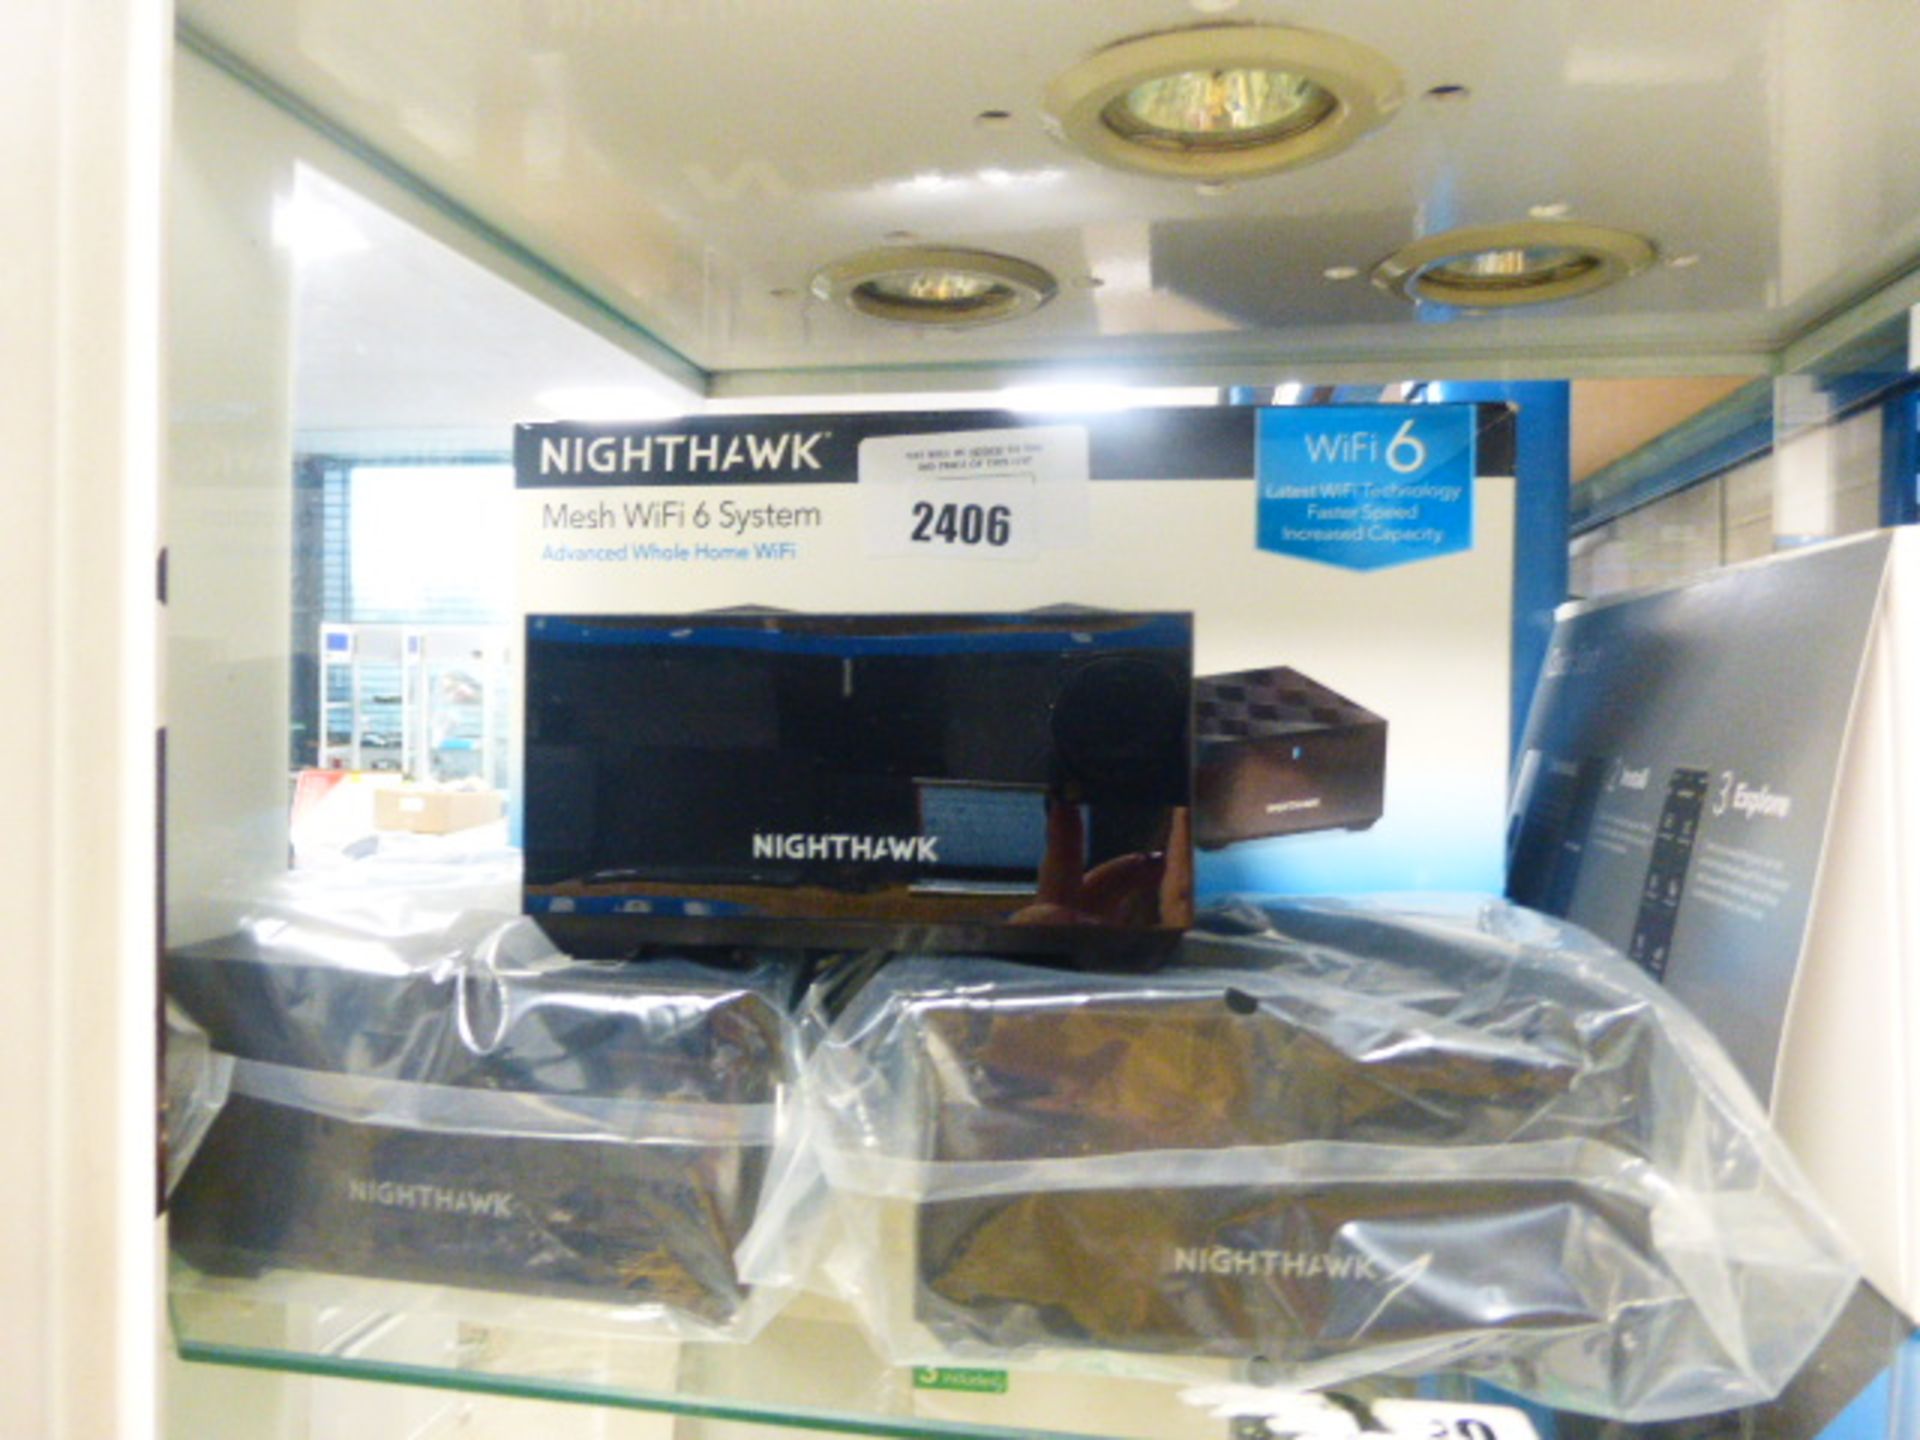 Netgear Nighthawk mesh wifi 6 system with box